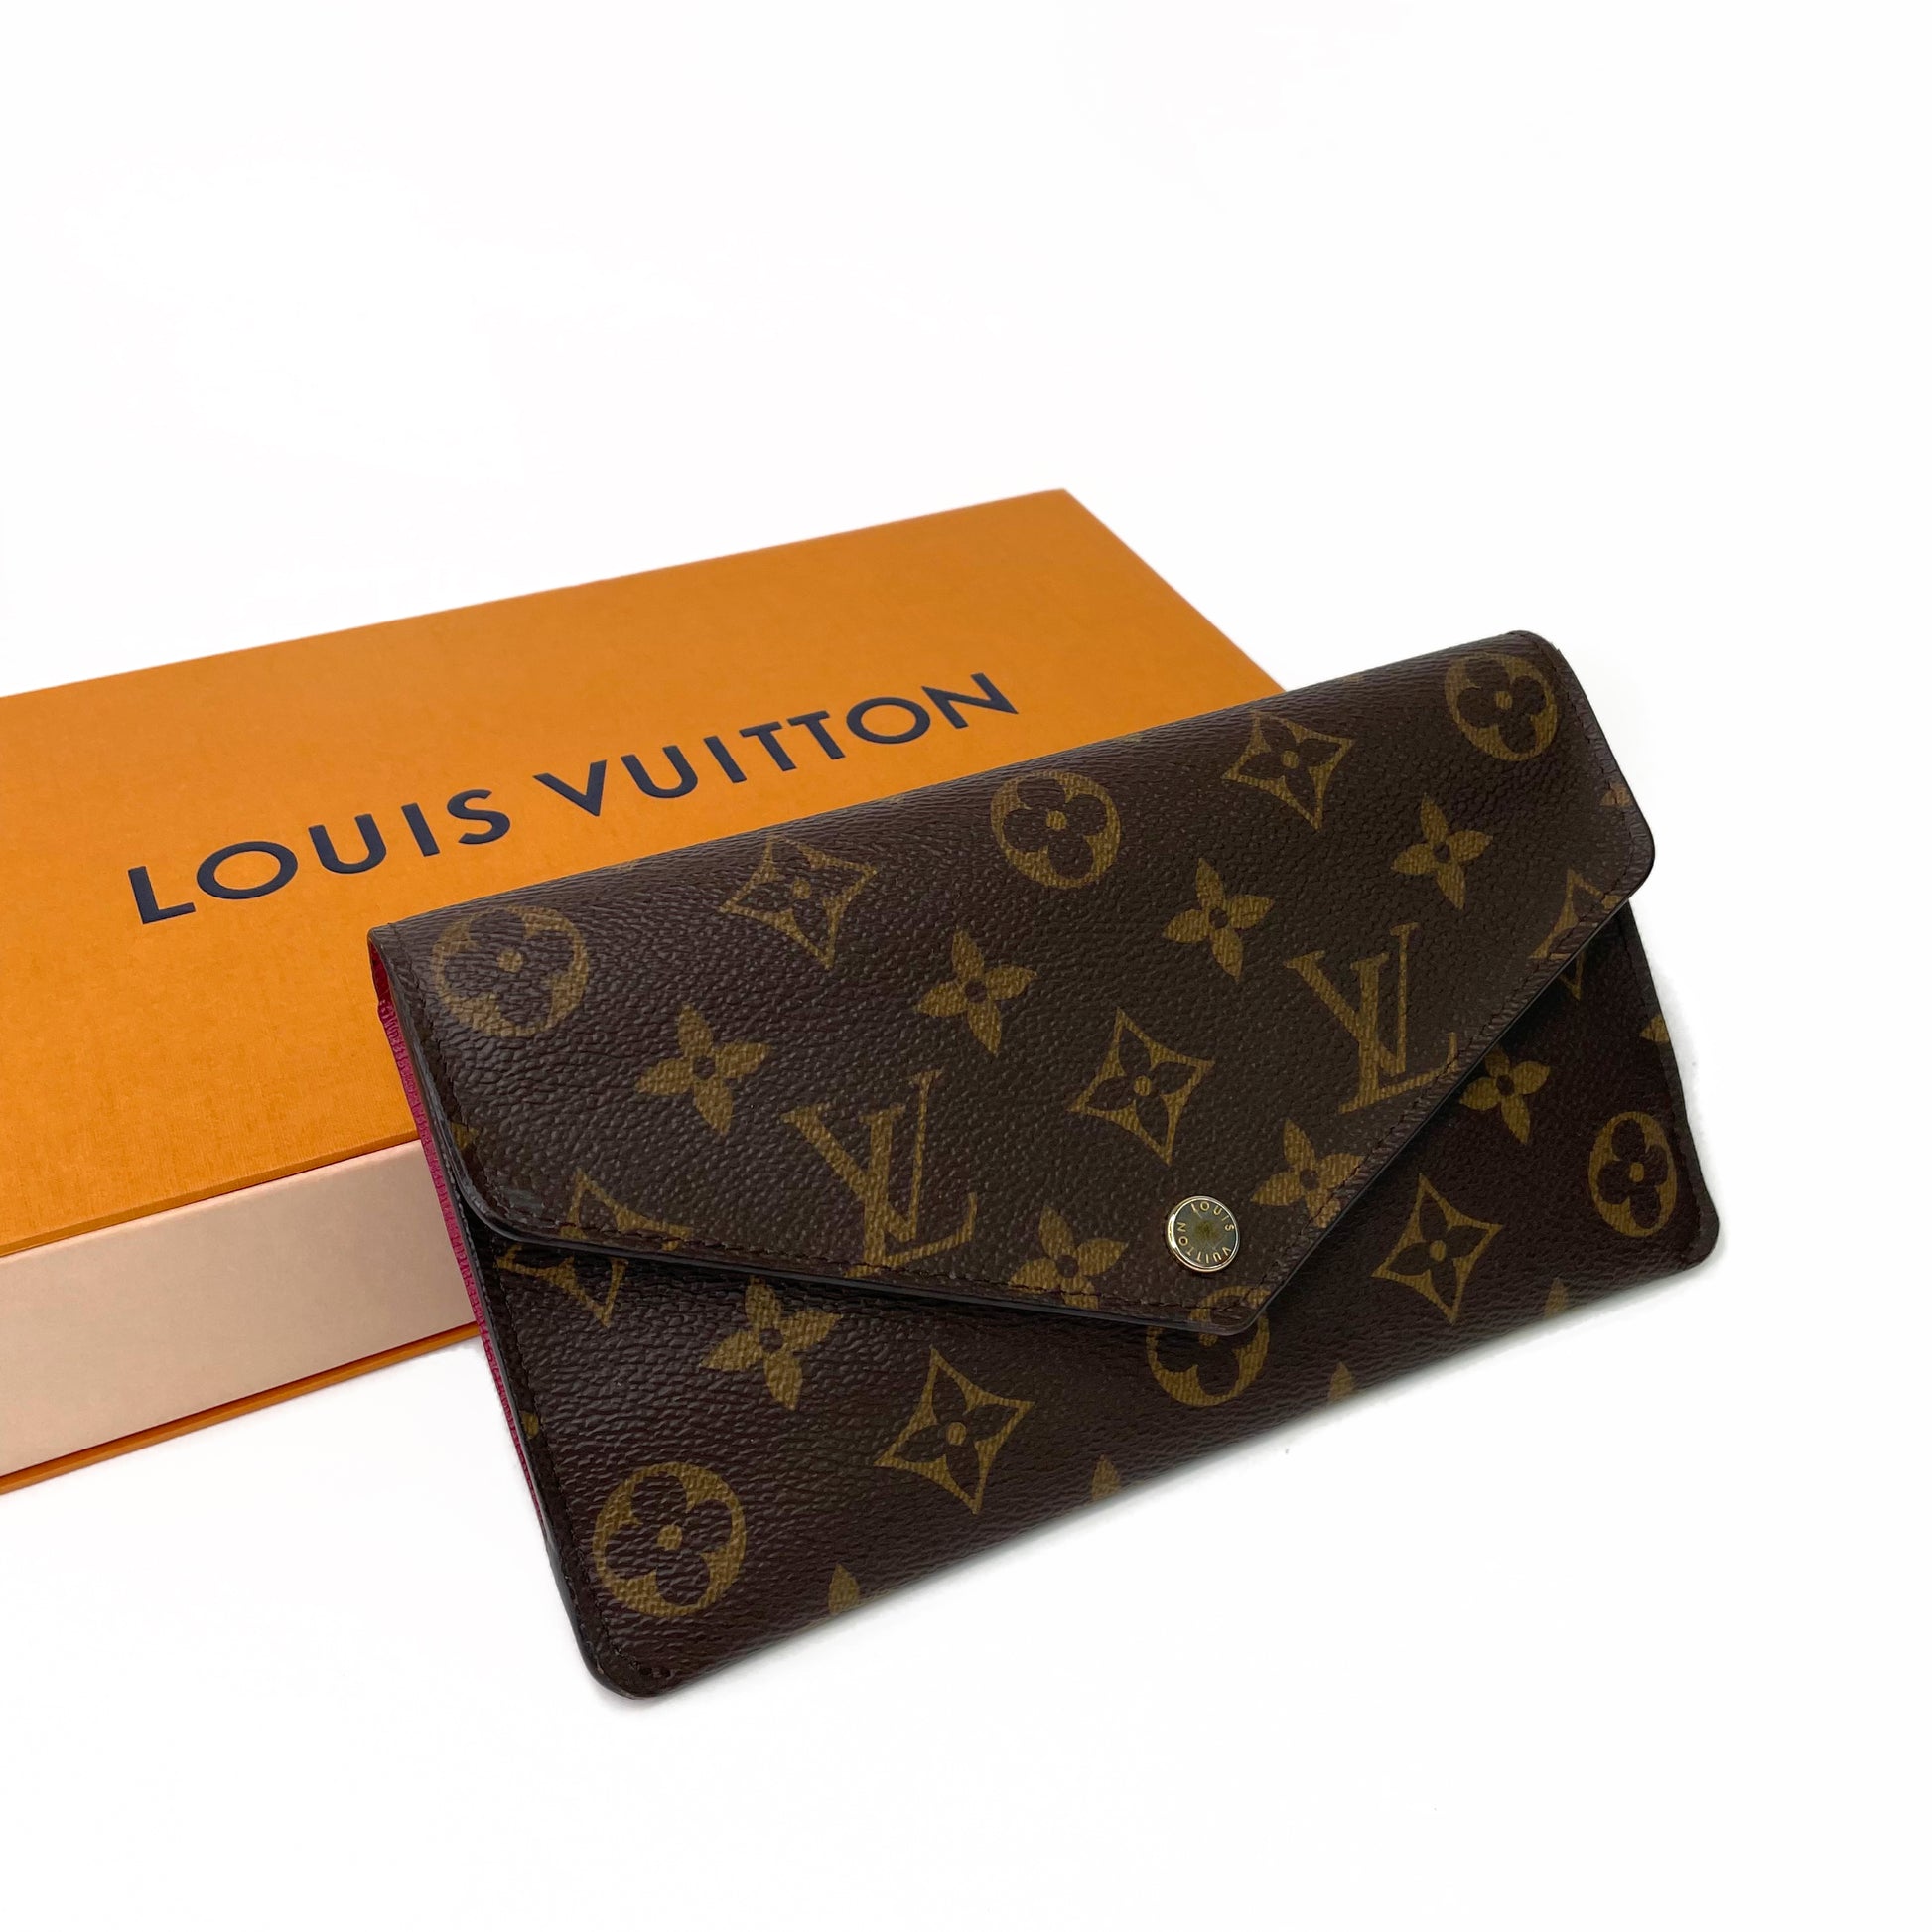 Louis Vuitton Jeanne Wallet